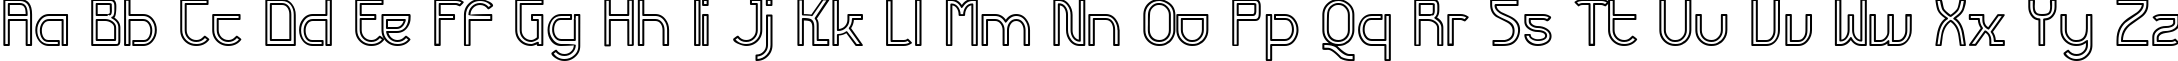 Пример написания английского алфавита шрифтом Futurex Variation Alpha Hollow